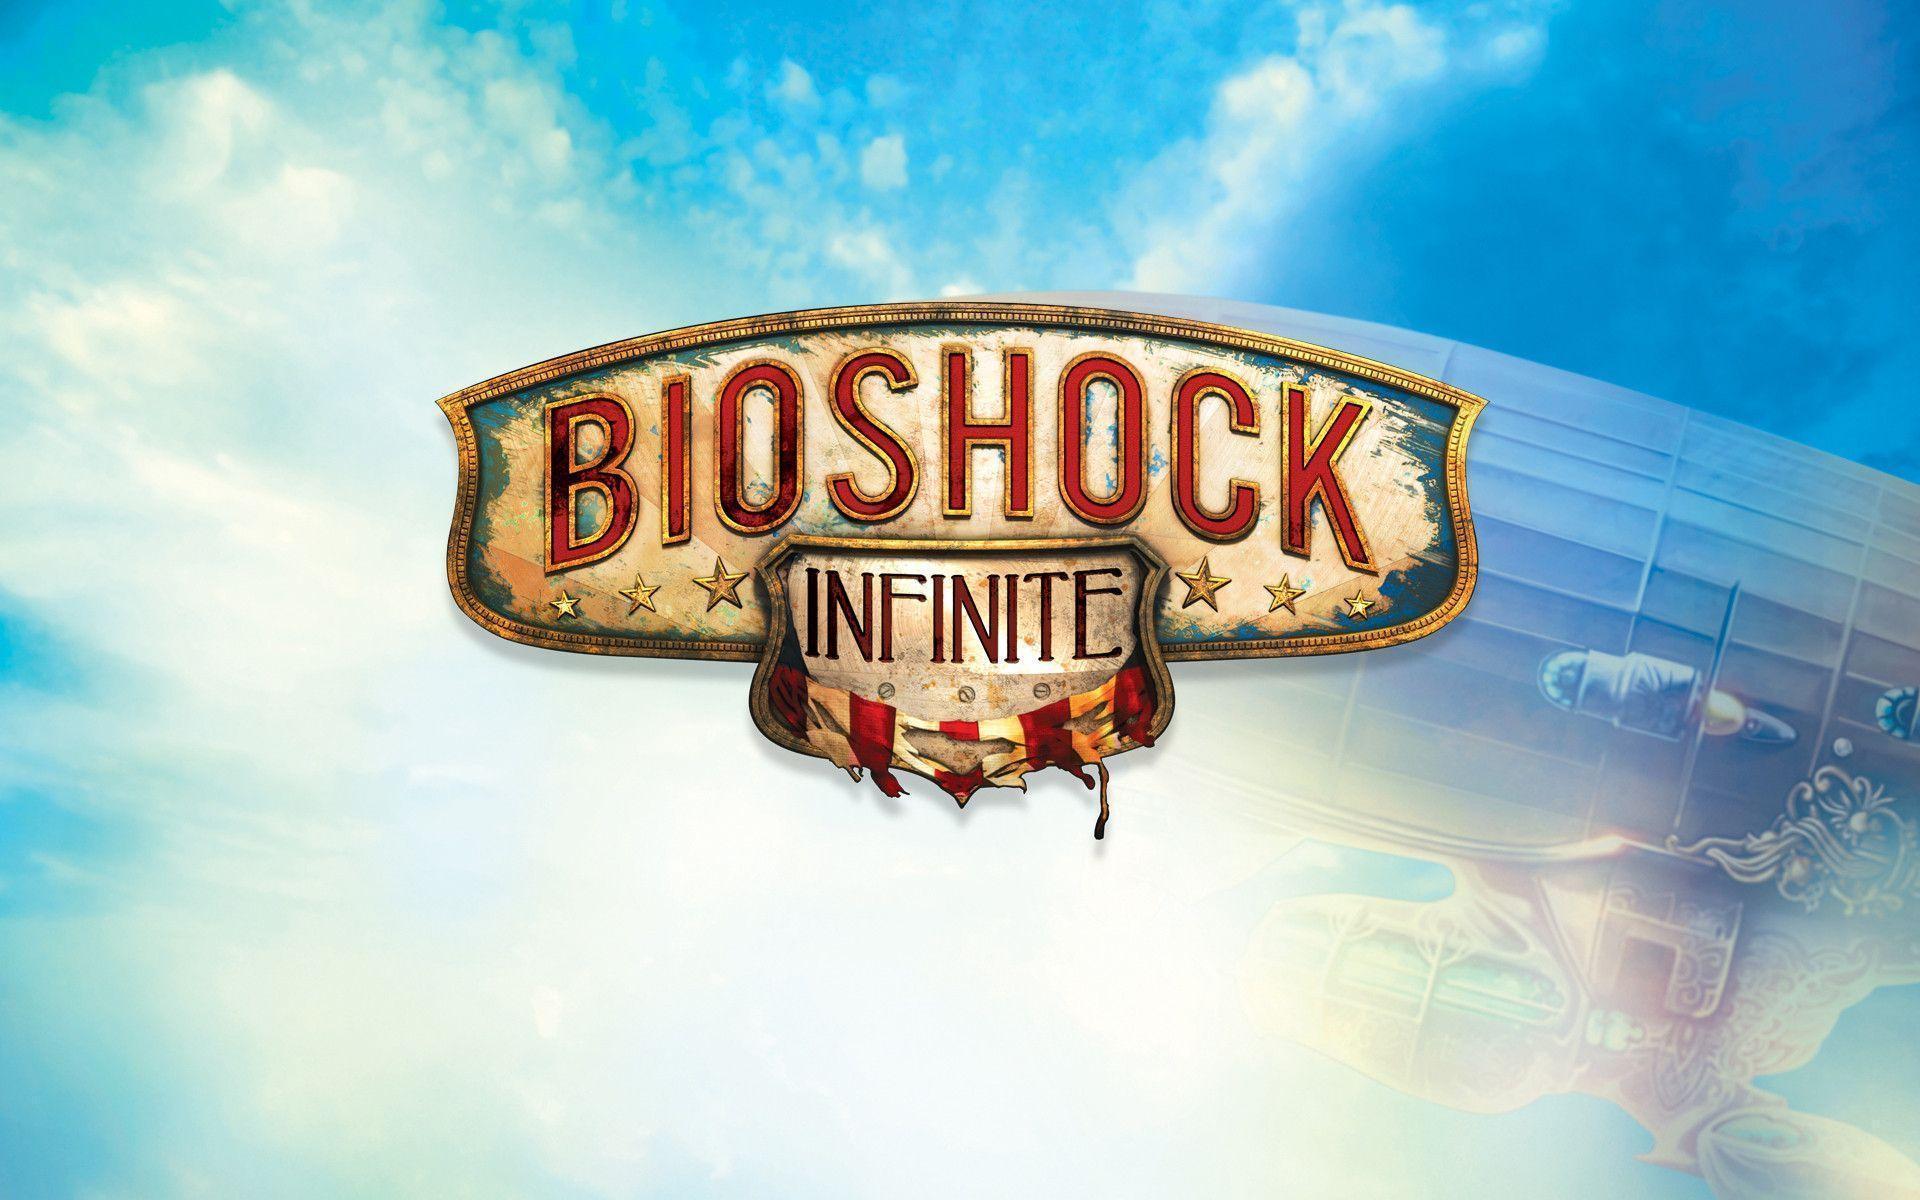 Elizabeth Bioshock Infinite HD Wallpaper. HD Wallpaper Points